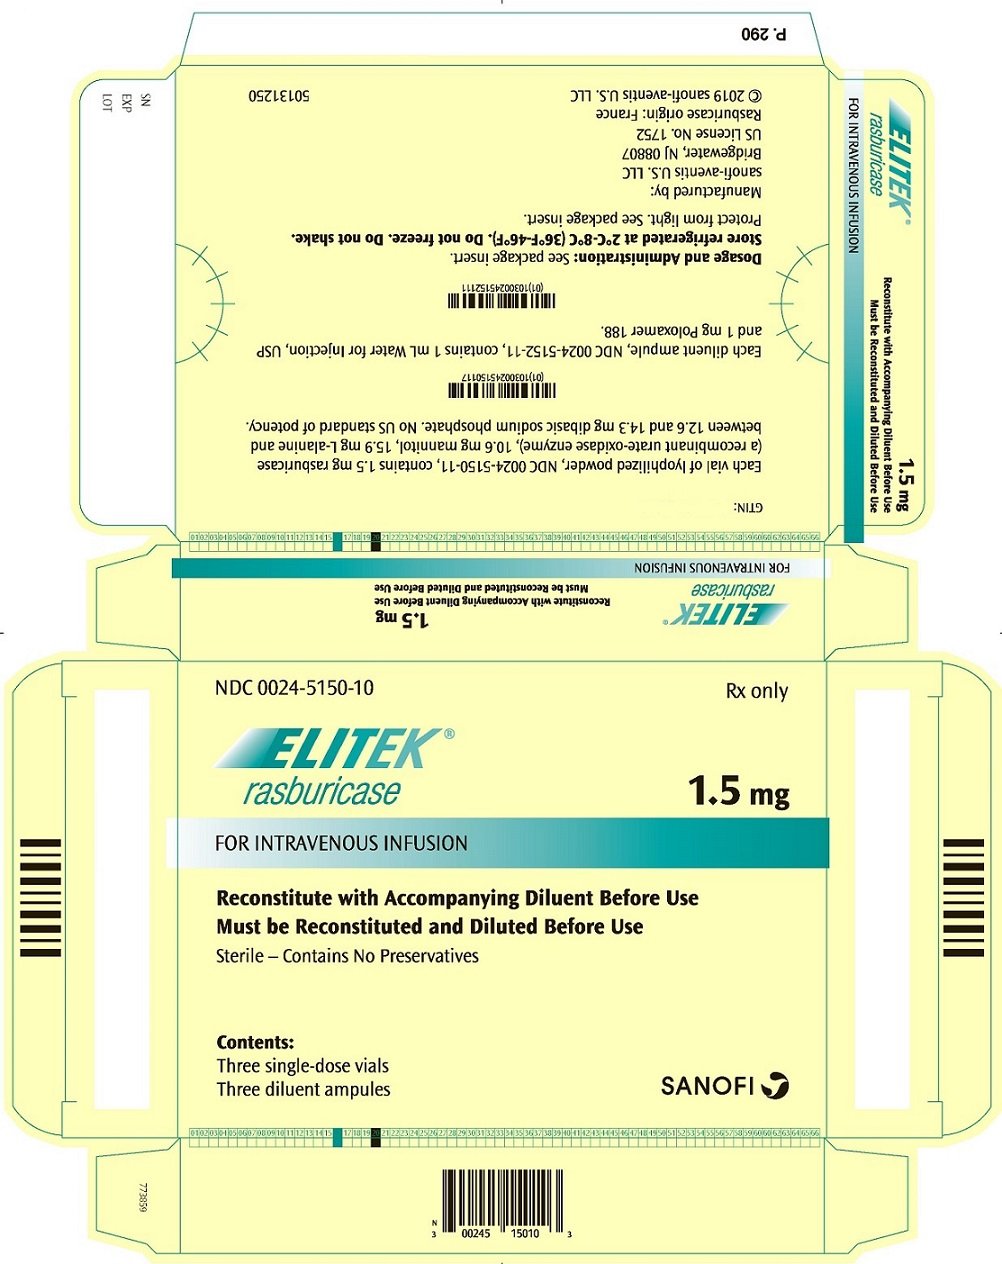 PRINCIPAL DISPLAY PANEL - 1.5 mg Kit Carton